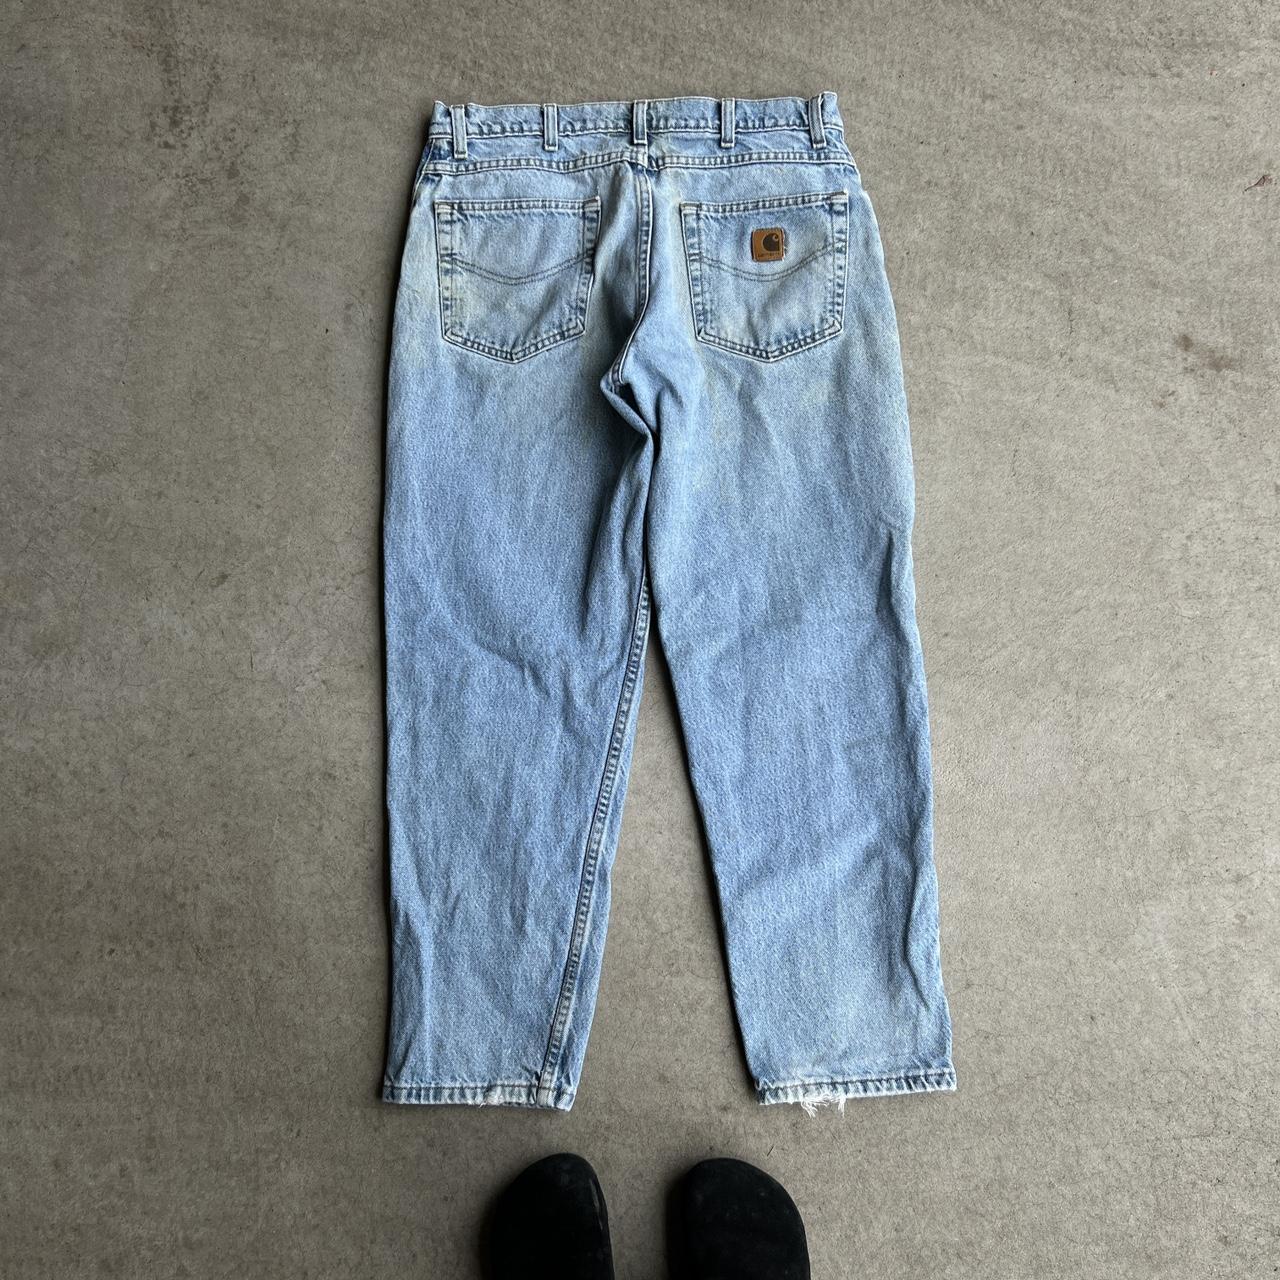 Baggy Vintage Carhartt Jeans Size: 34/30 #skater... - Depop